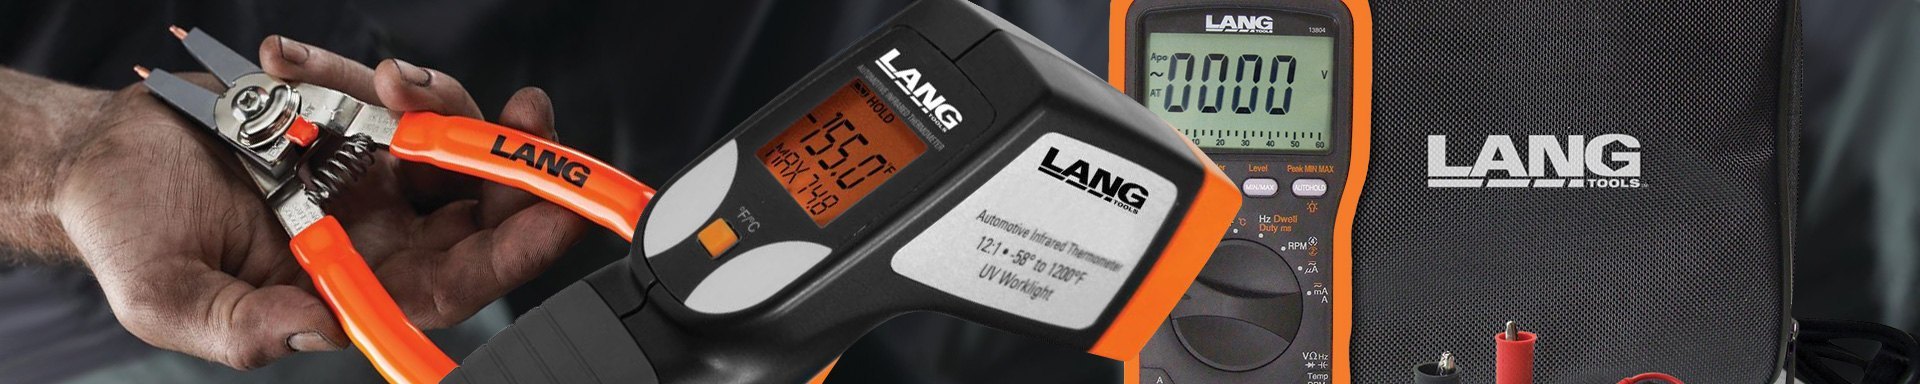 Lang Tools Lockout Kits